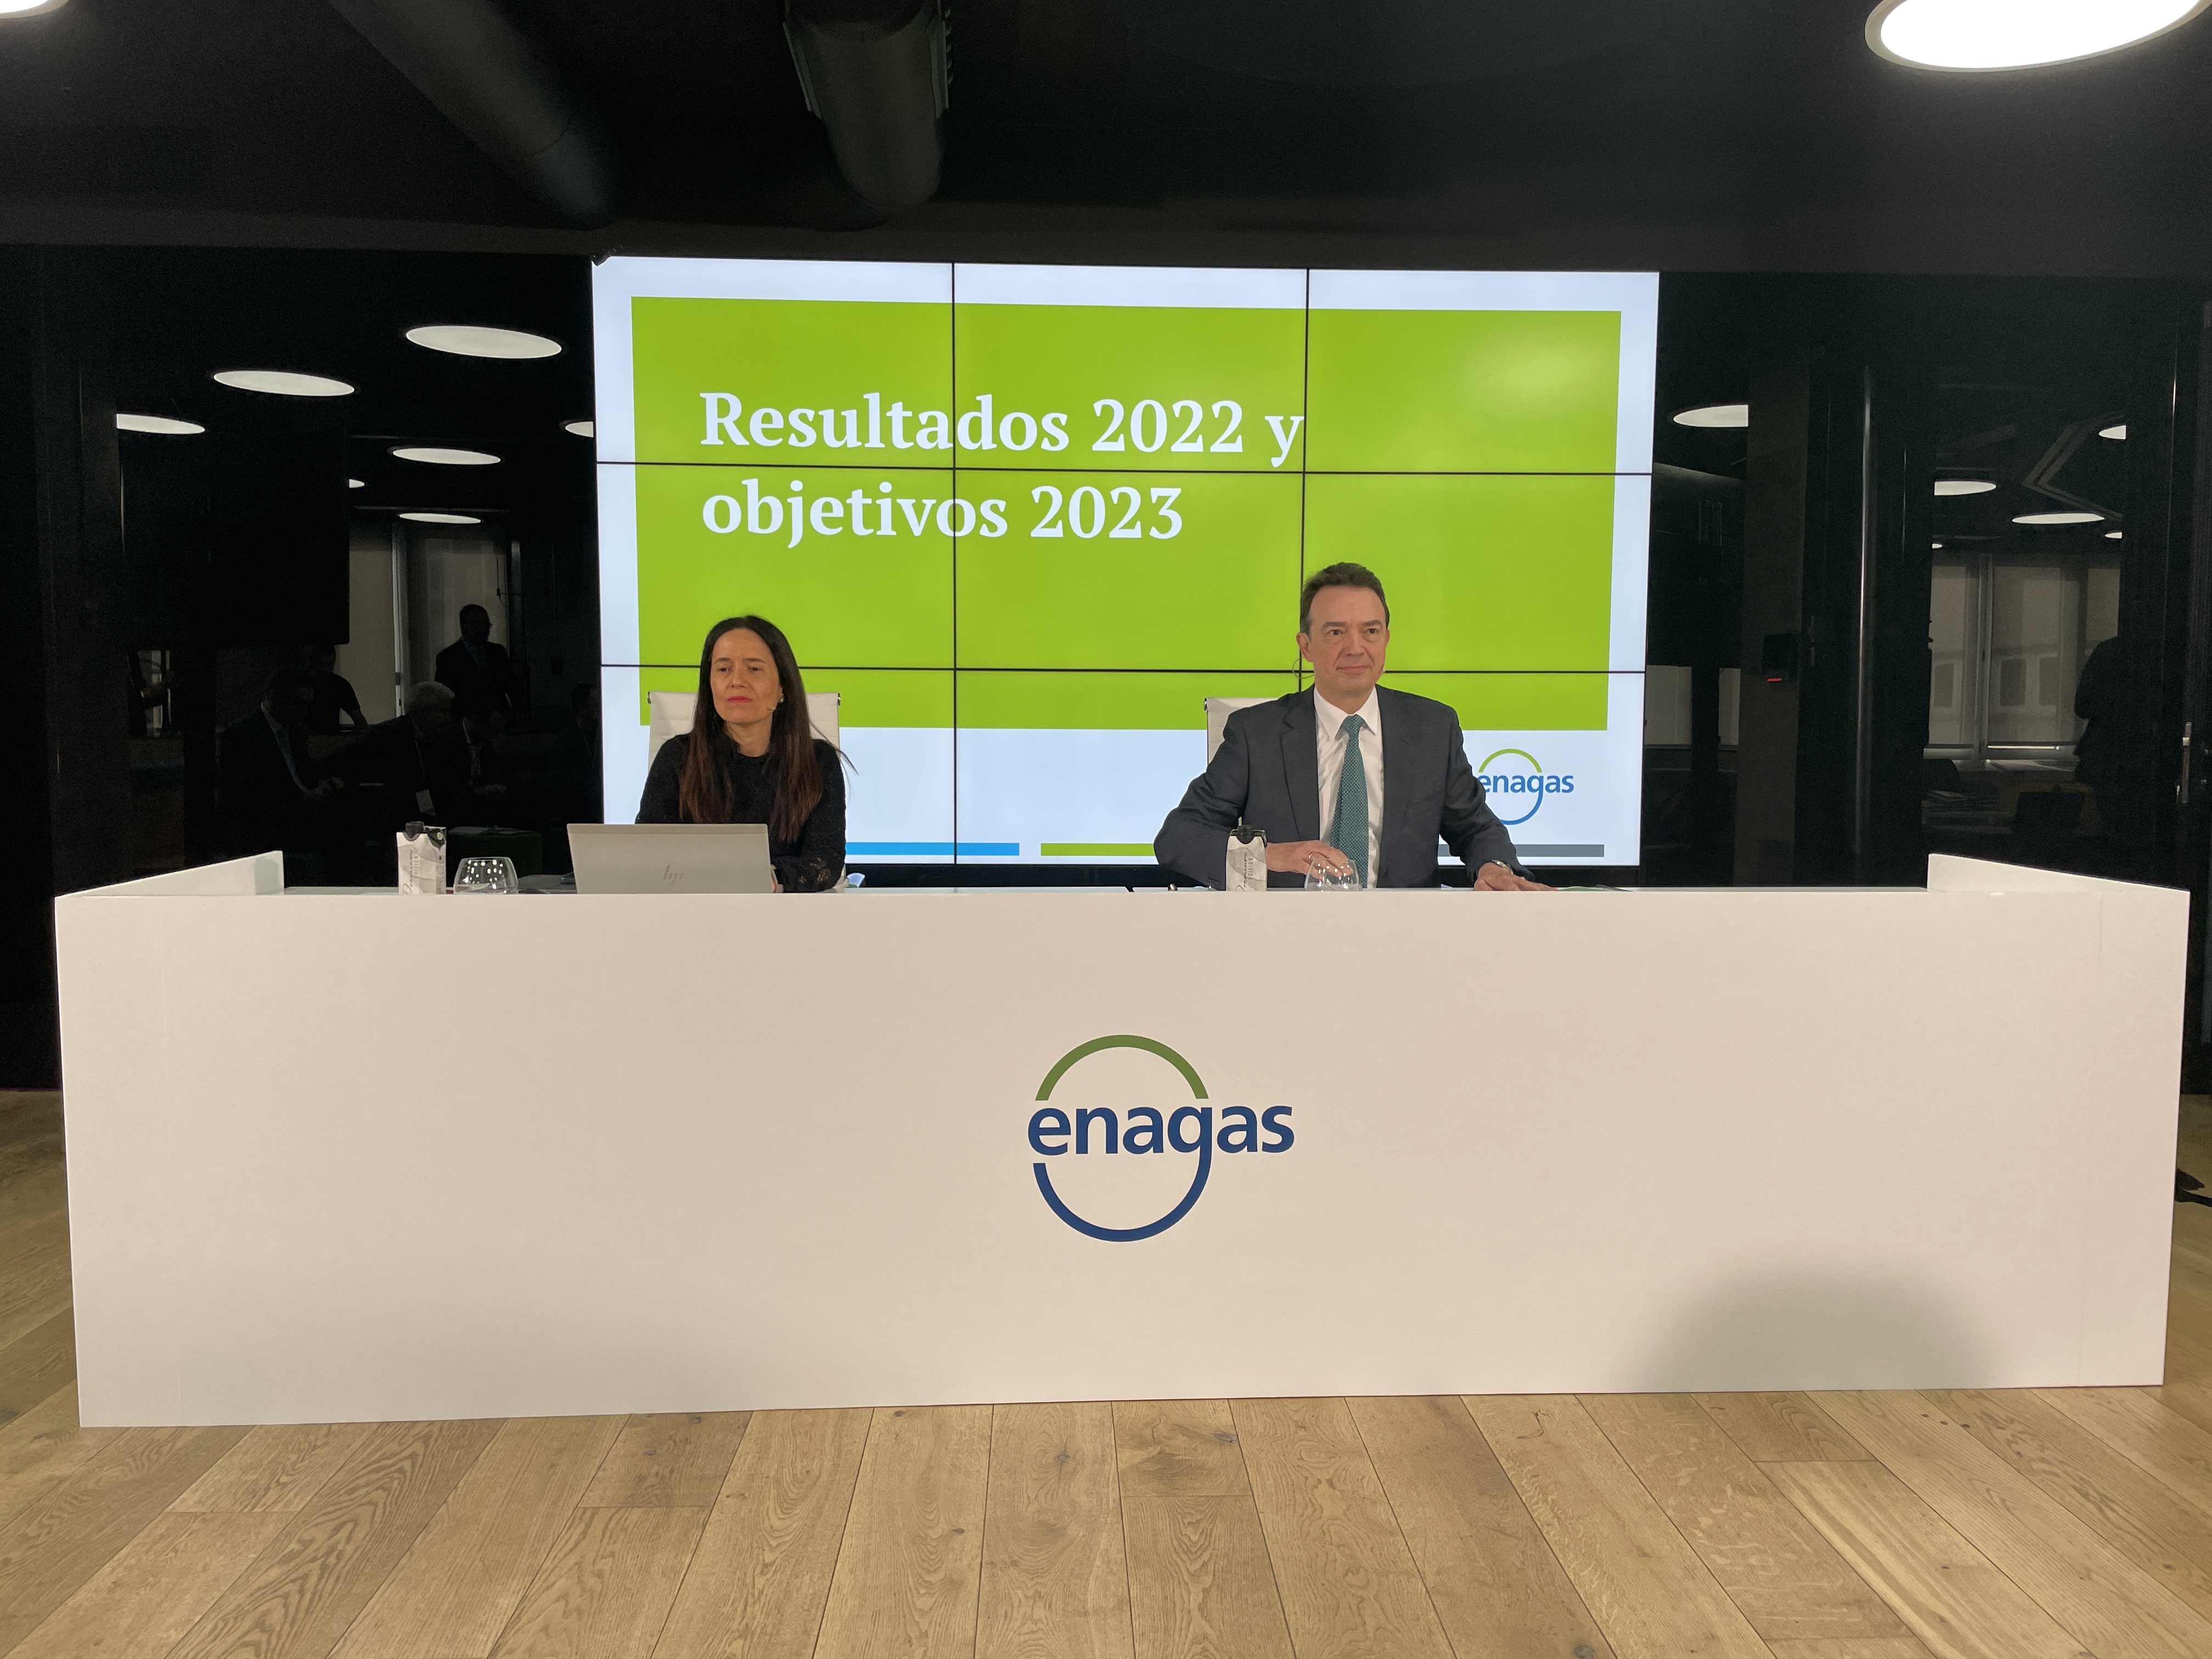 CEO de Enagás en la presentación de resultados 2022 y objetivos 2023